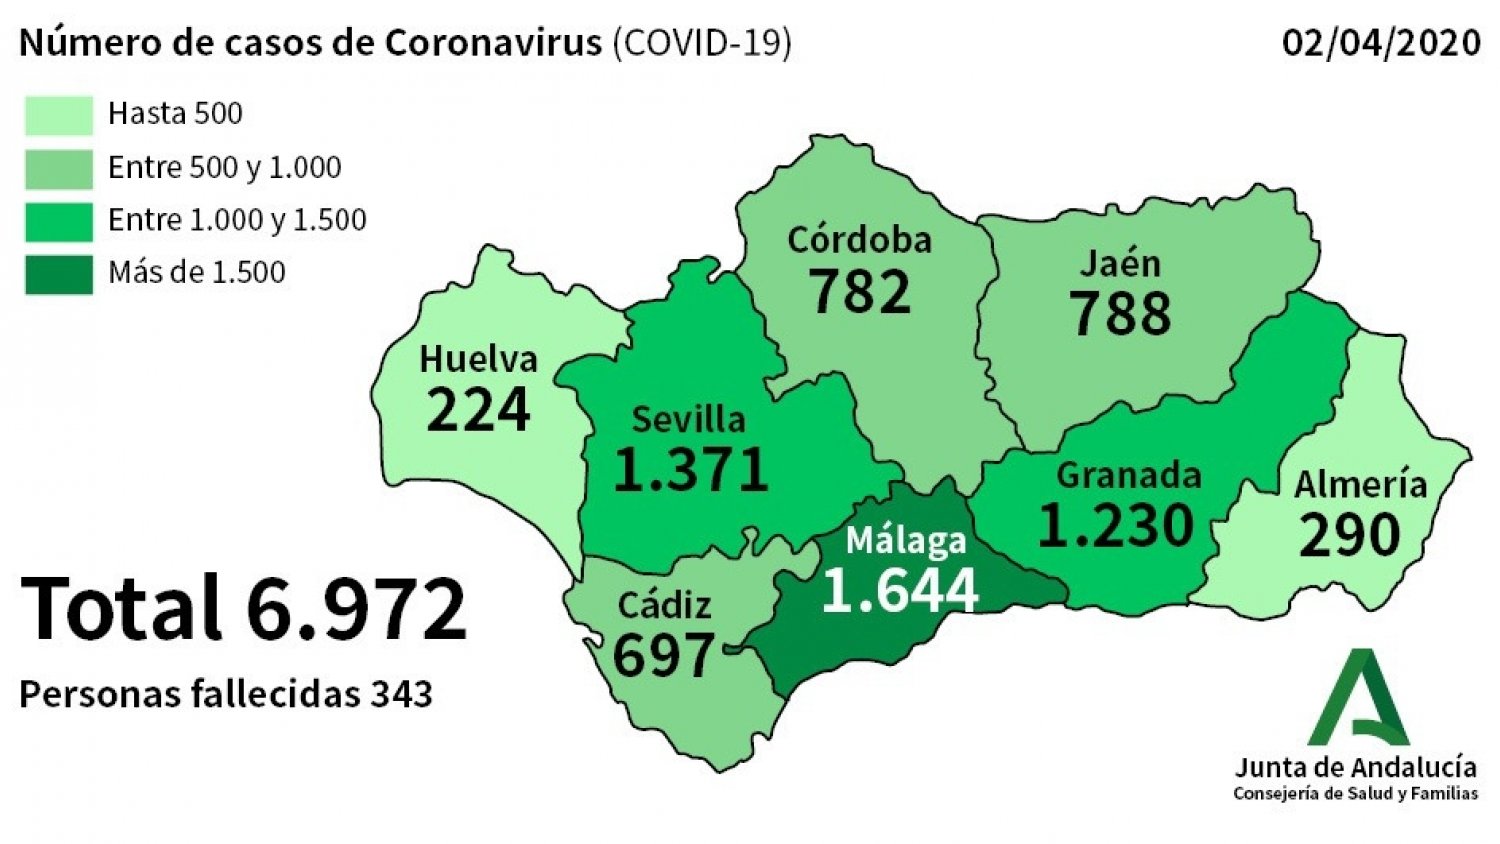 Málaga sufre un repunte de afectados por coronavirus con 180 nuevos casos en las últimas 24 horas